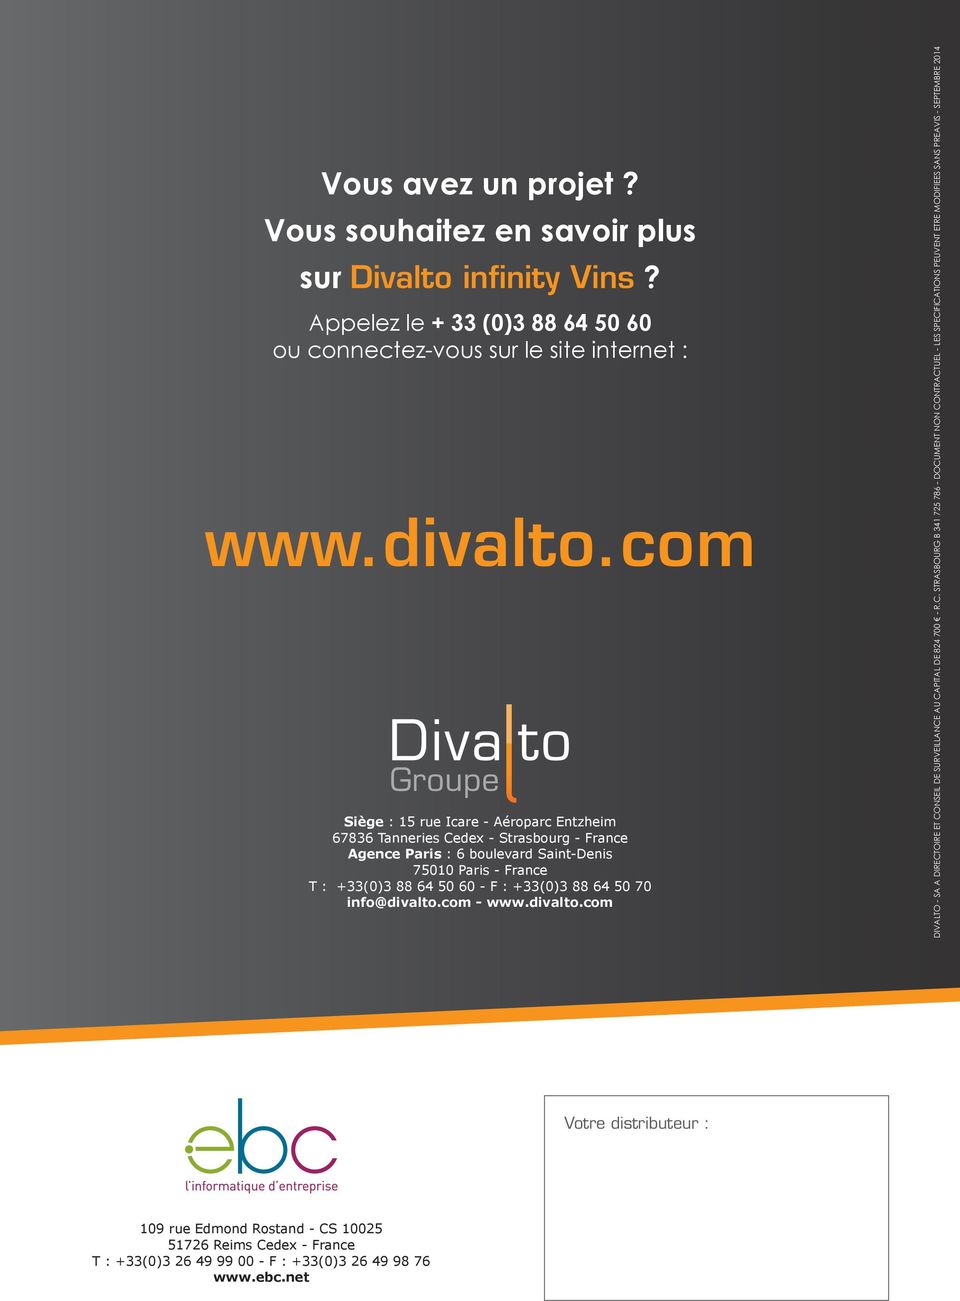 88 64 50 70 info@divalto.com - www.divalto.com DIVALTO - SA A DIRECT